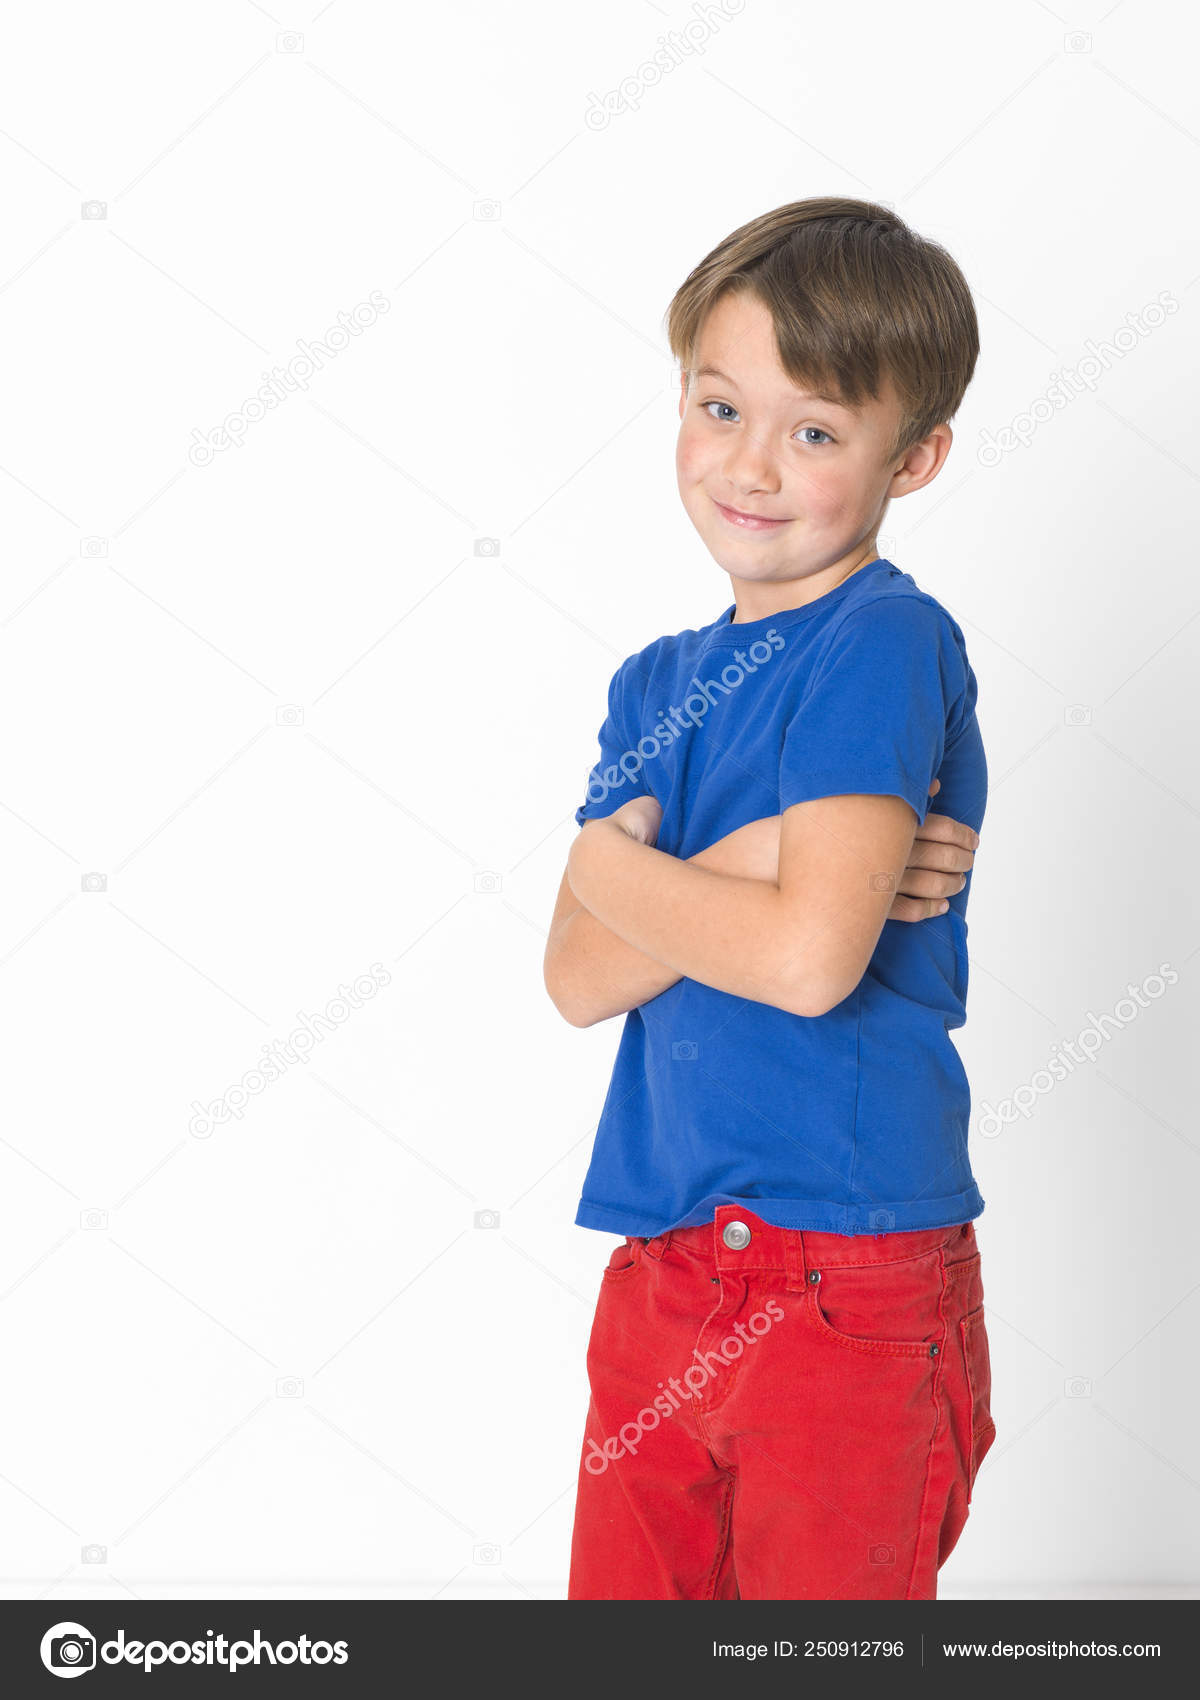 Timide Zes Jongen Rode Broek Blauw Shirt Poseren Met Stockfoto, rechtenvrije foto © epiximages